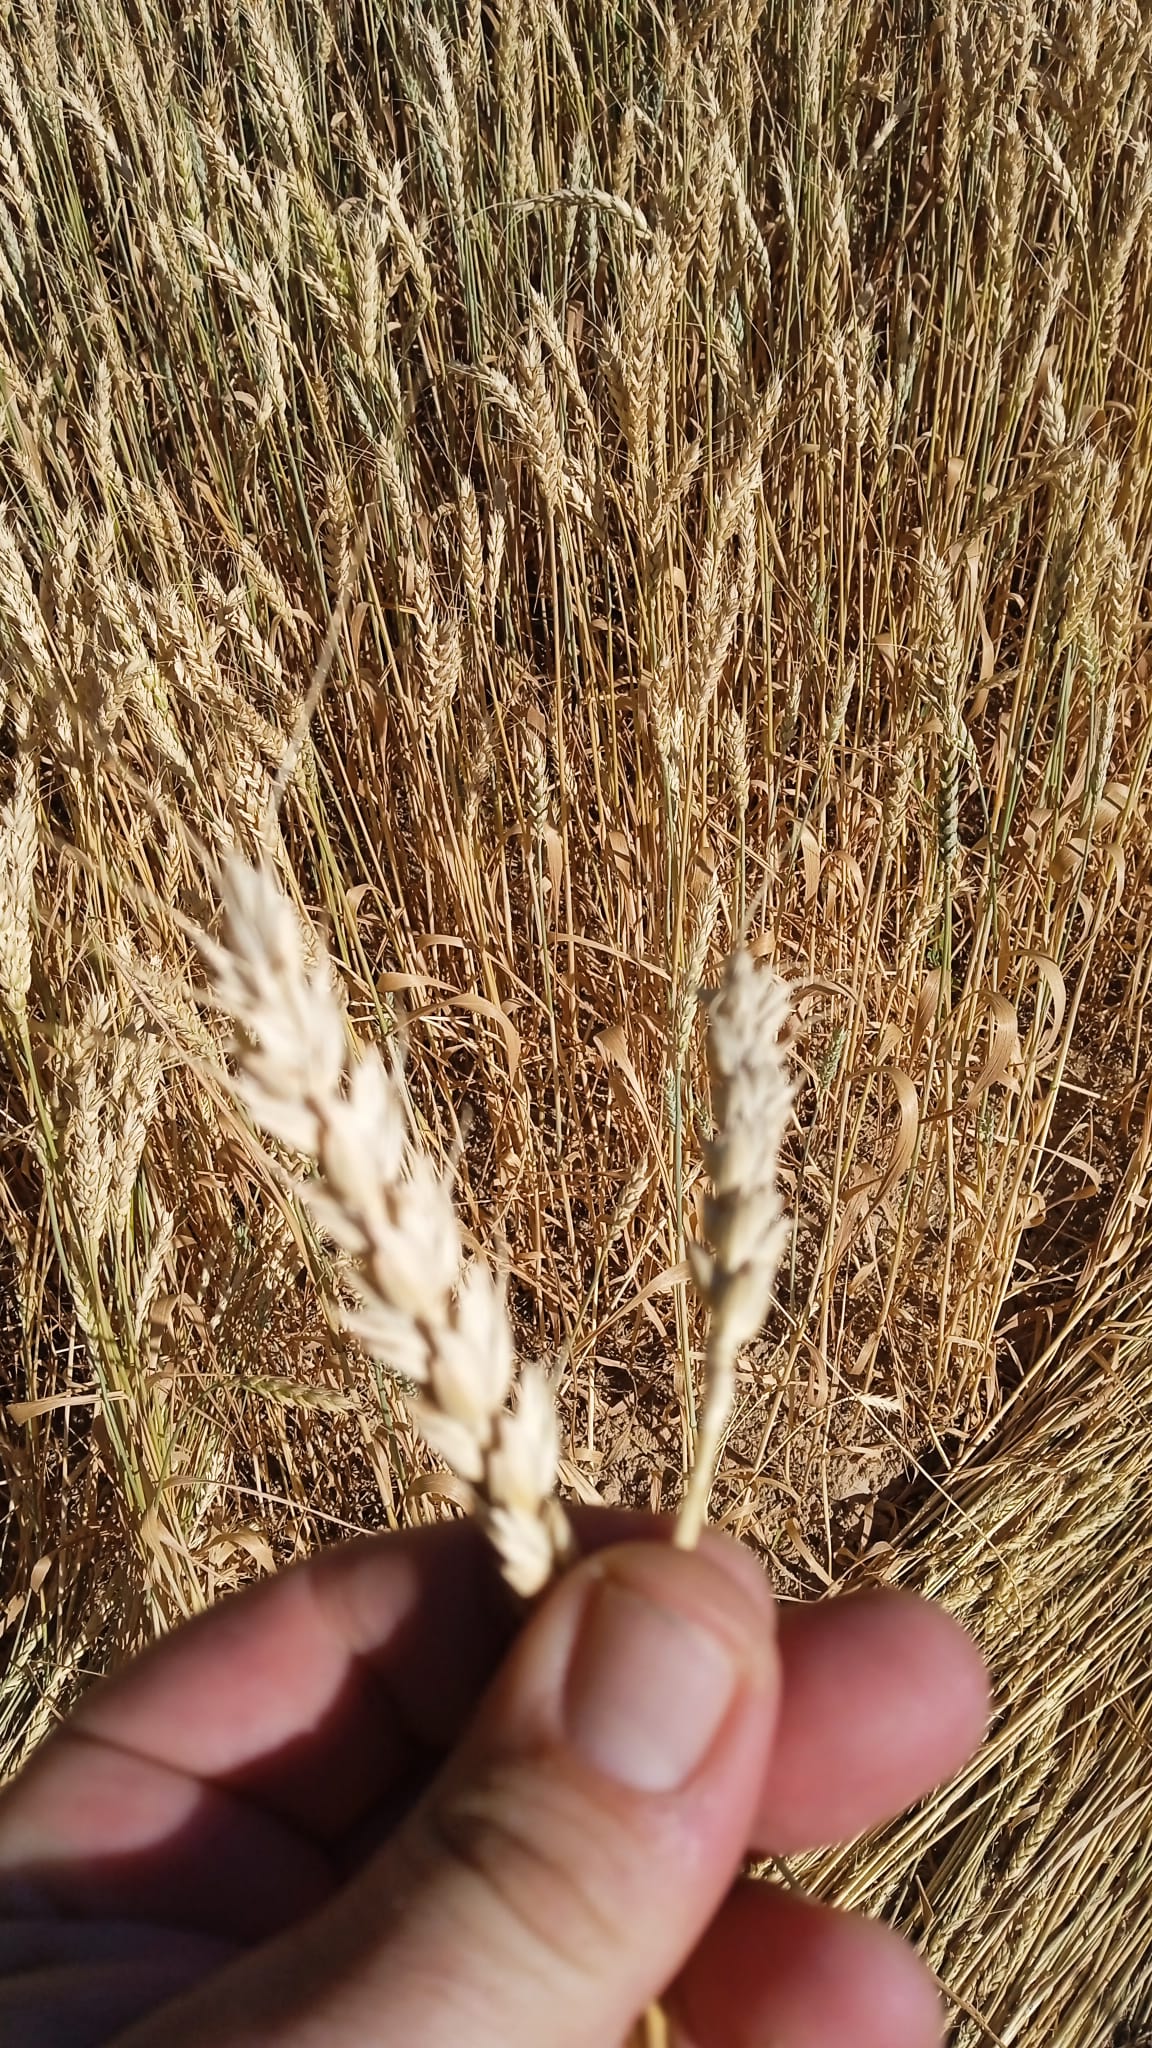 LA UNIÓ de Llauradors señala que las altas temperaturas de mayo provocan la pérdida de alrededor del 25% de la cosecha de cereales